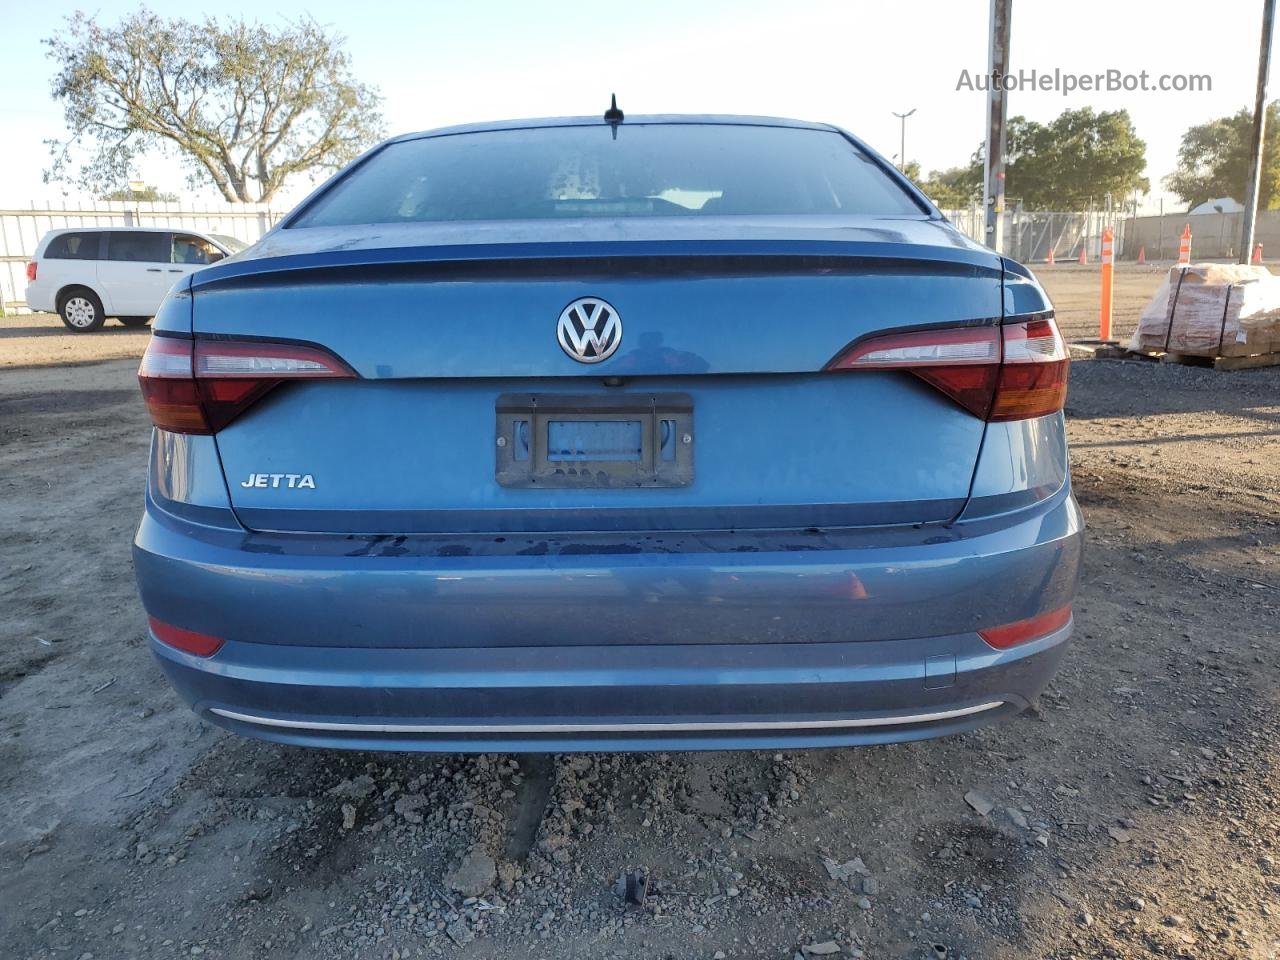 2019 Volkswagen Jetta S Blue vin: 3VWN57BU3KM104012